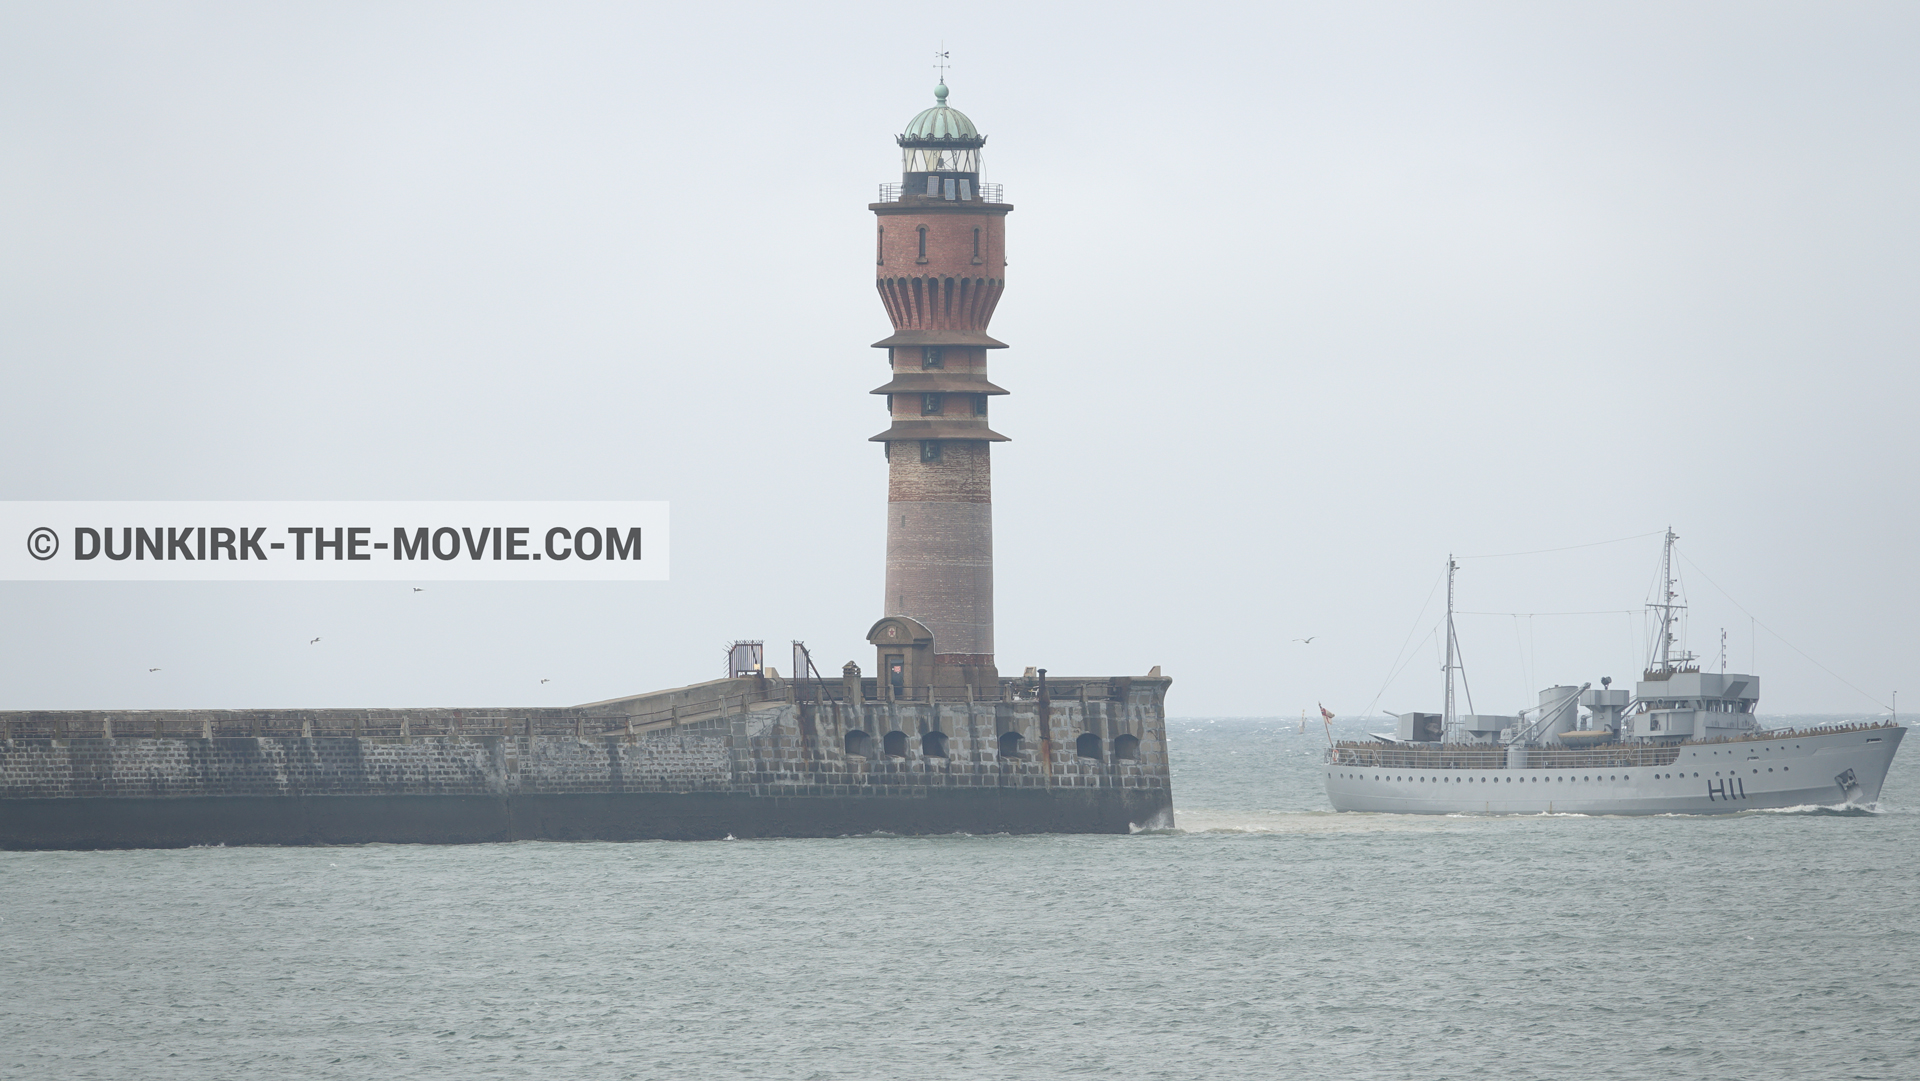 Photo avec H11 - MLV Castor, phare de St Pol sur Mer,  des dessous du Film Dunkerque de Nolan